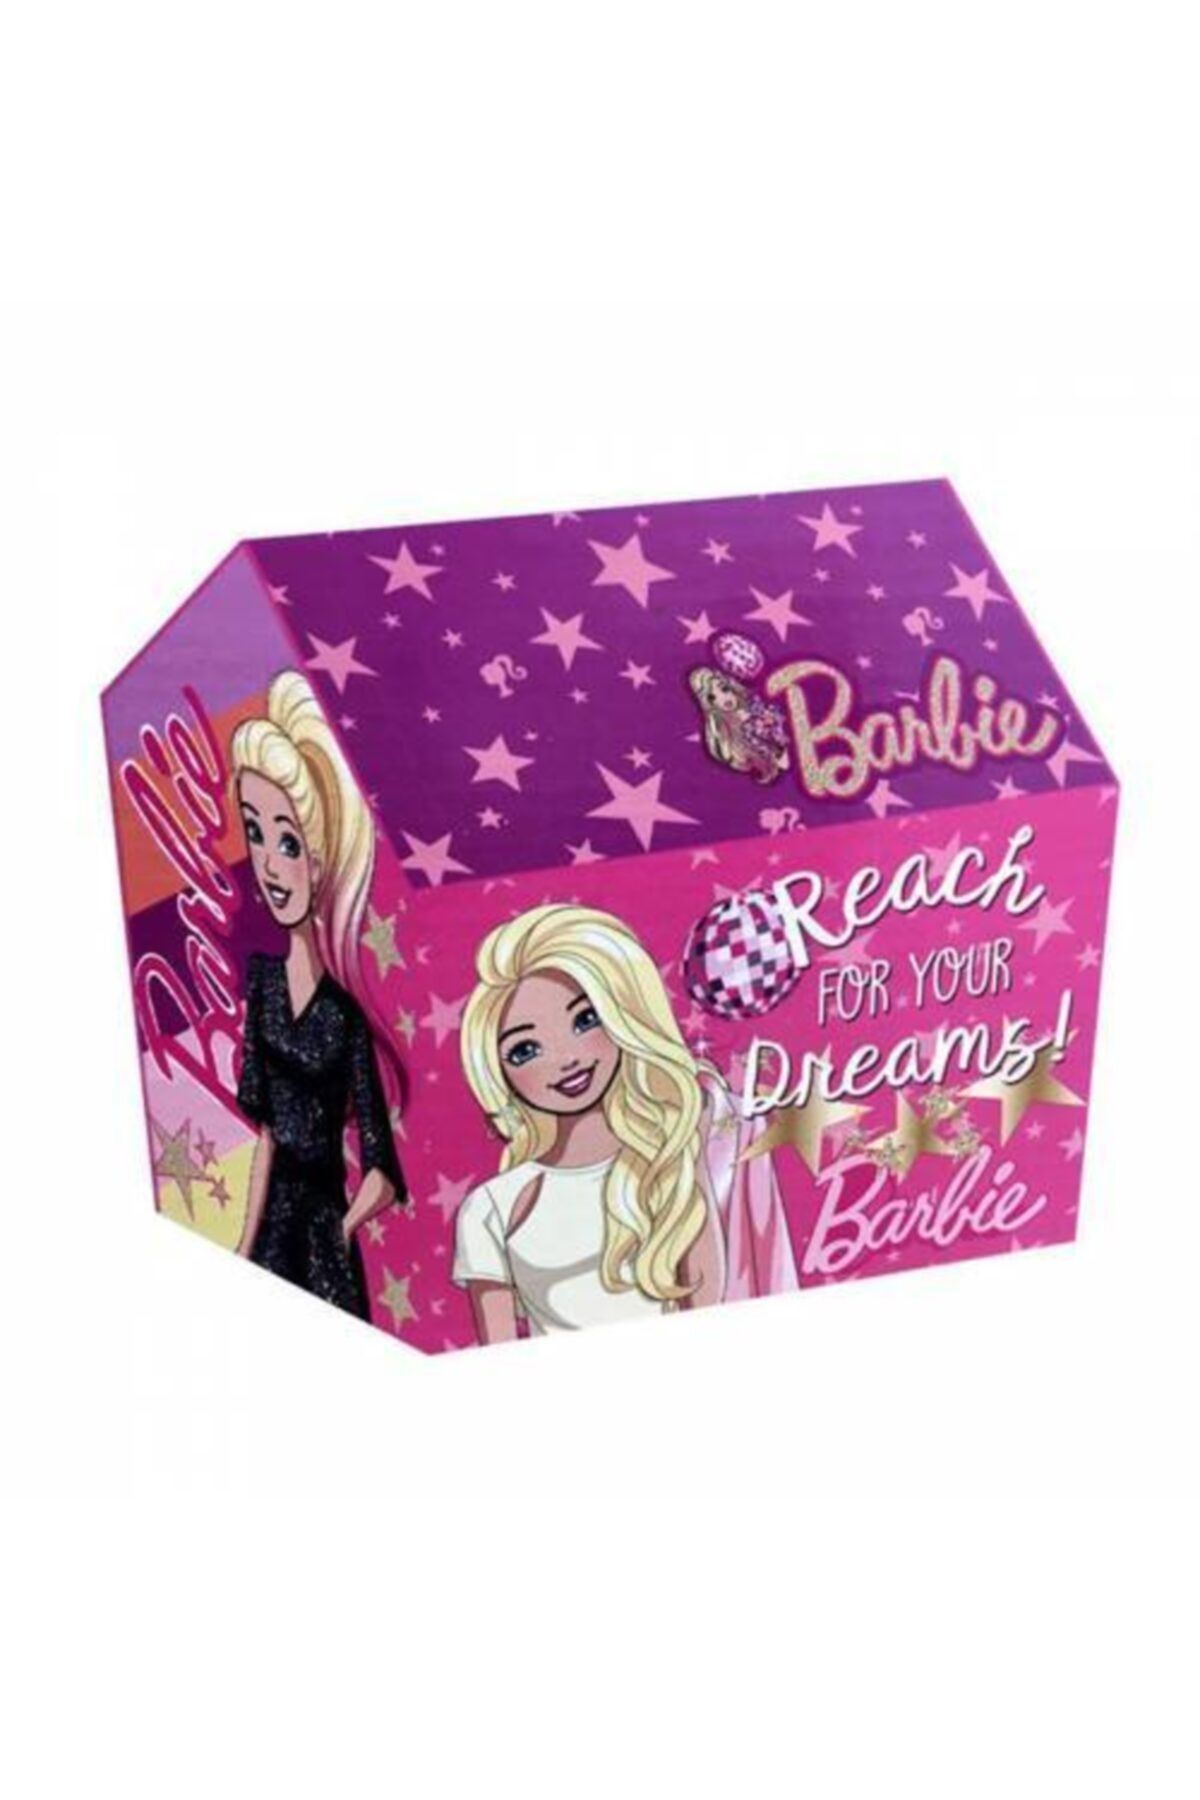 Mashotrend Barbie Oyun Çadırı - 100 X 100 X 70 Cm Lisanslı Çocuk Çadırı